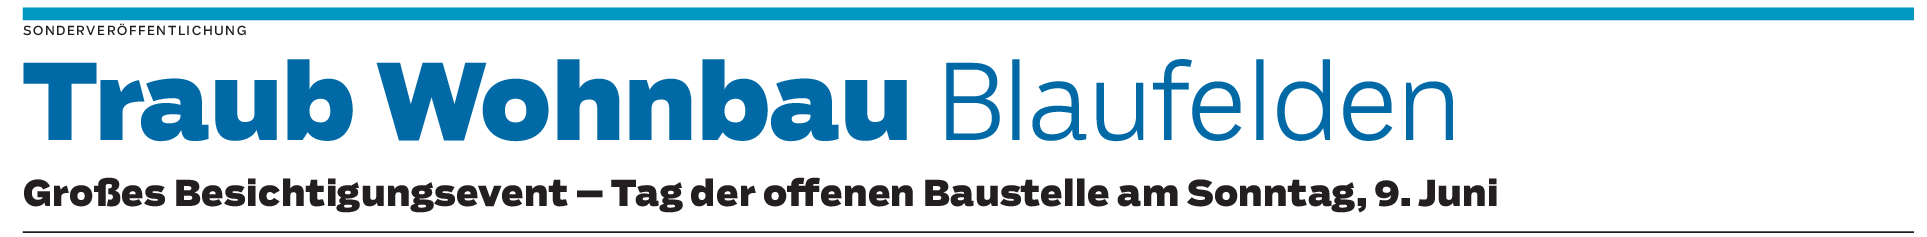 Traub Wohnbau in Blaufelden: Der Verkauf von 16 Wohnungen startet